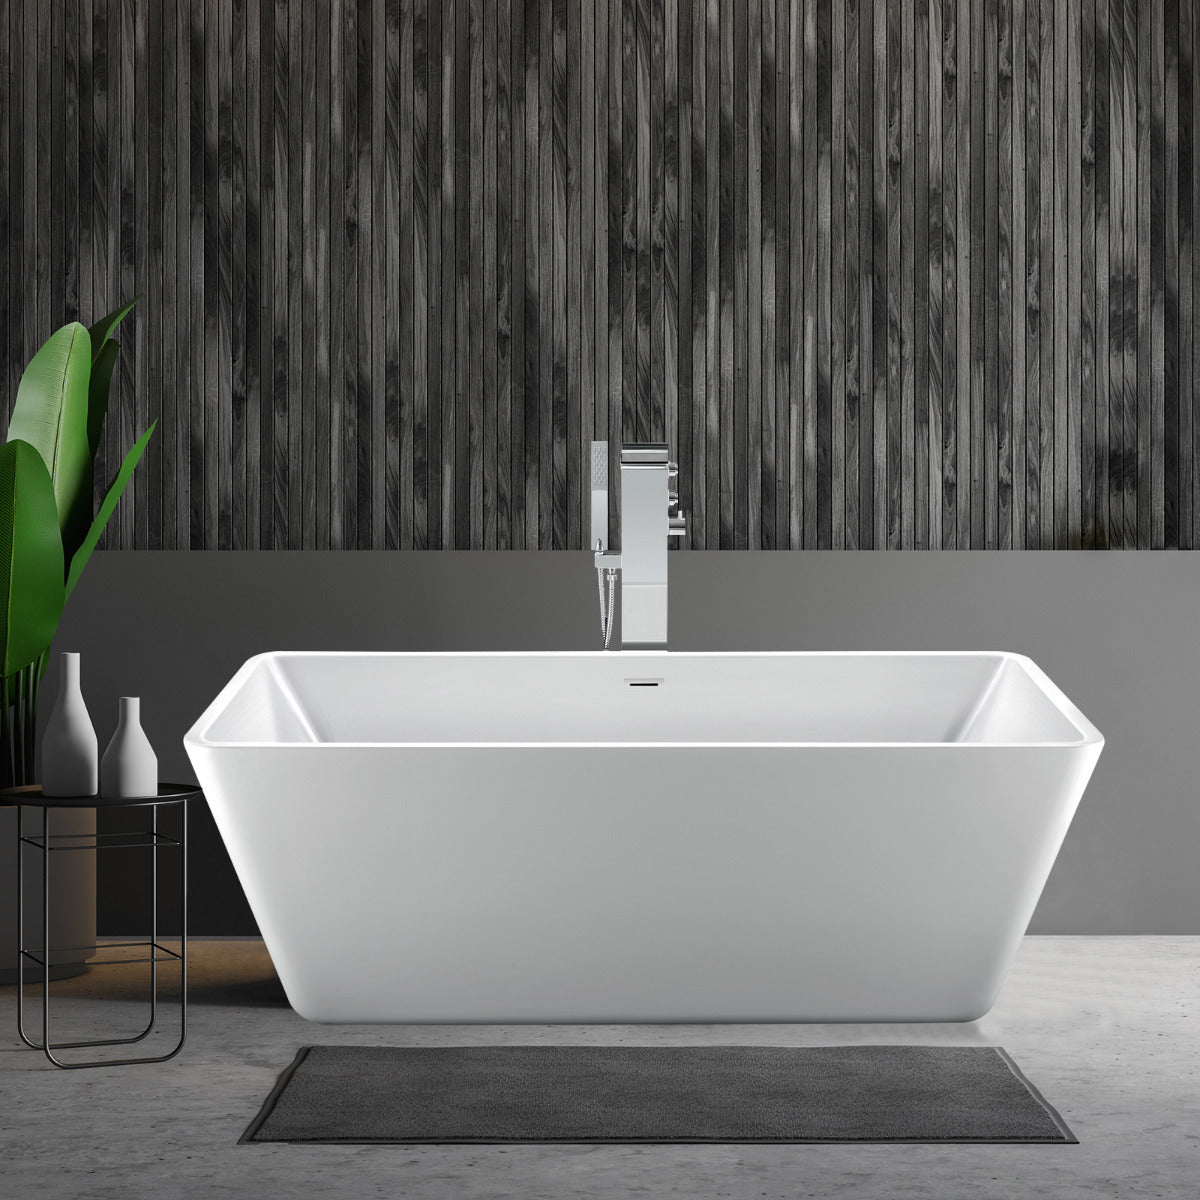 JassferryJASSFERRY Modern Freestanding Bathtub Luxury Rectangular Hourglass Design WhiteBathtubs